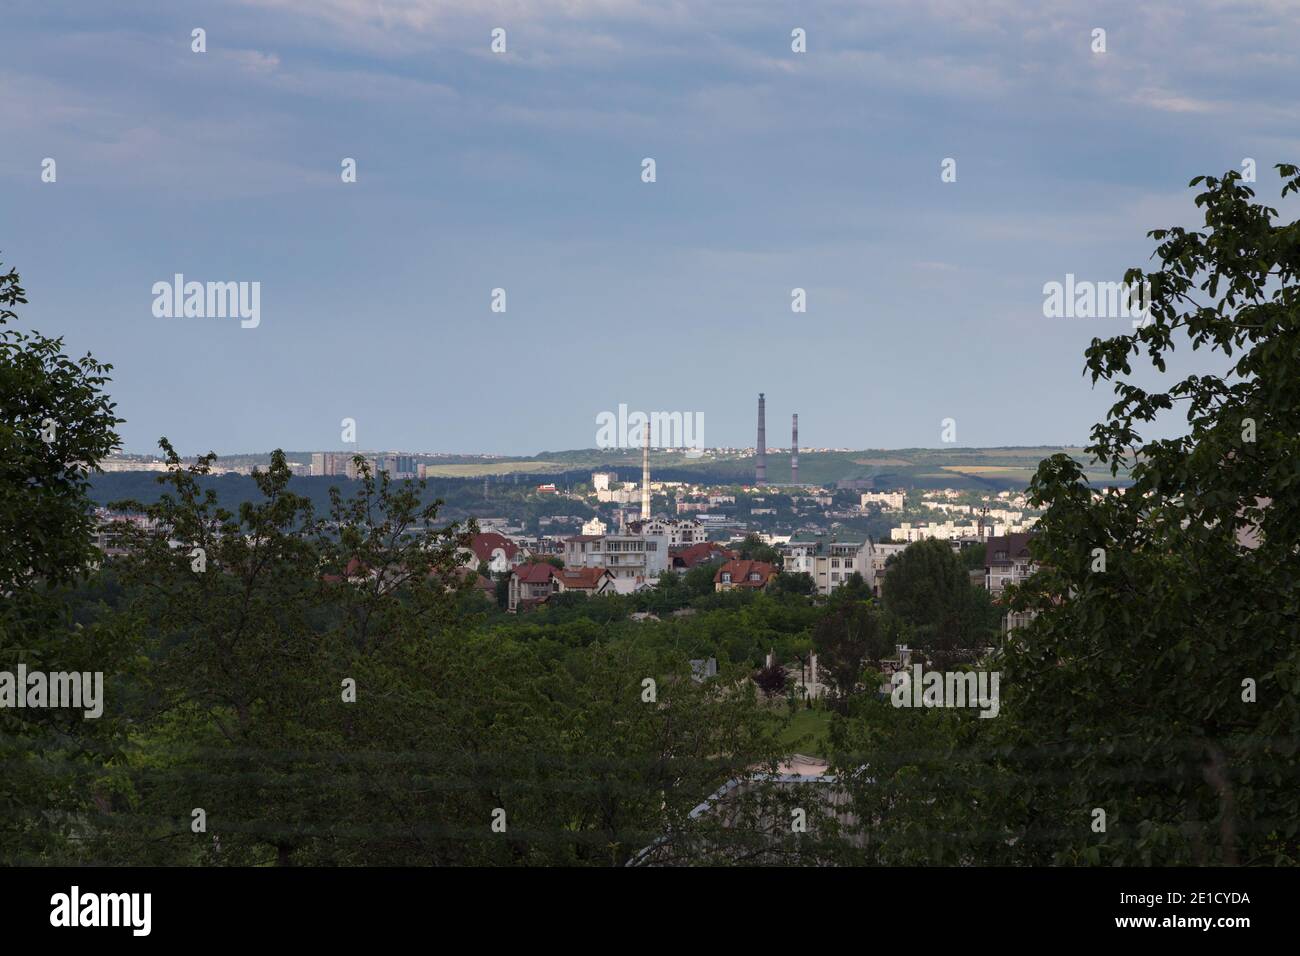 Belle vue sur la ville depuis ma fenêtre. Chisinau, République de Moldova. Banque D'Images